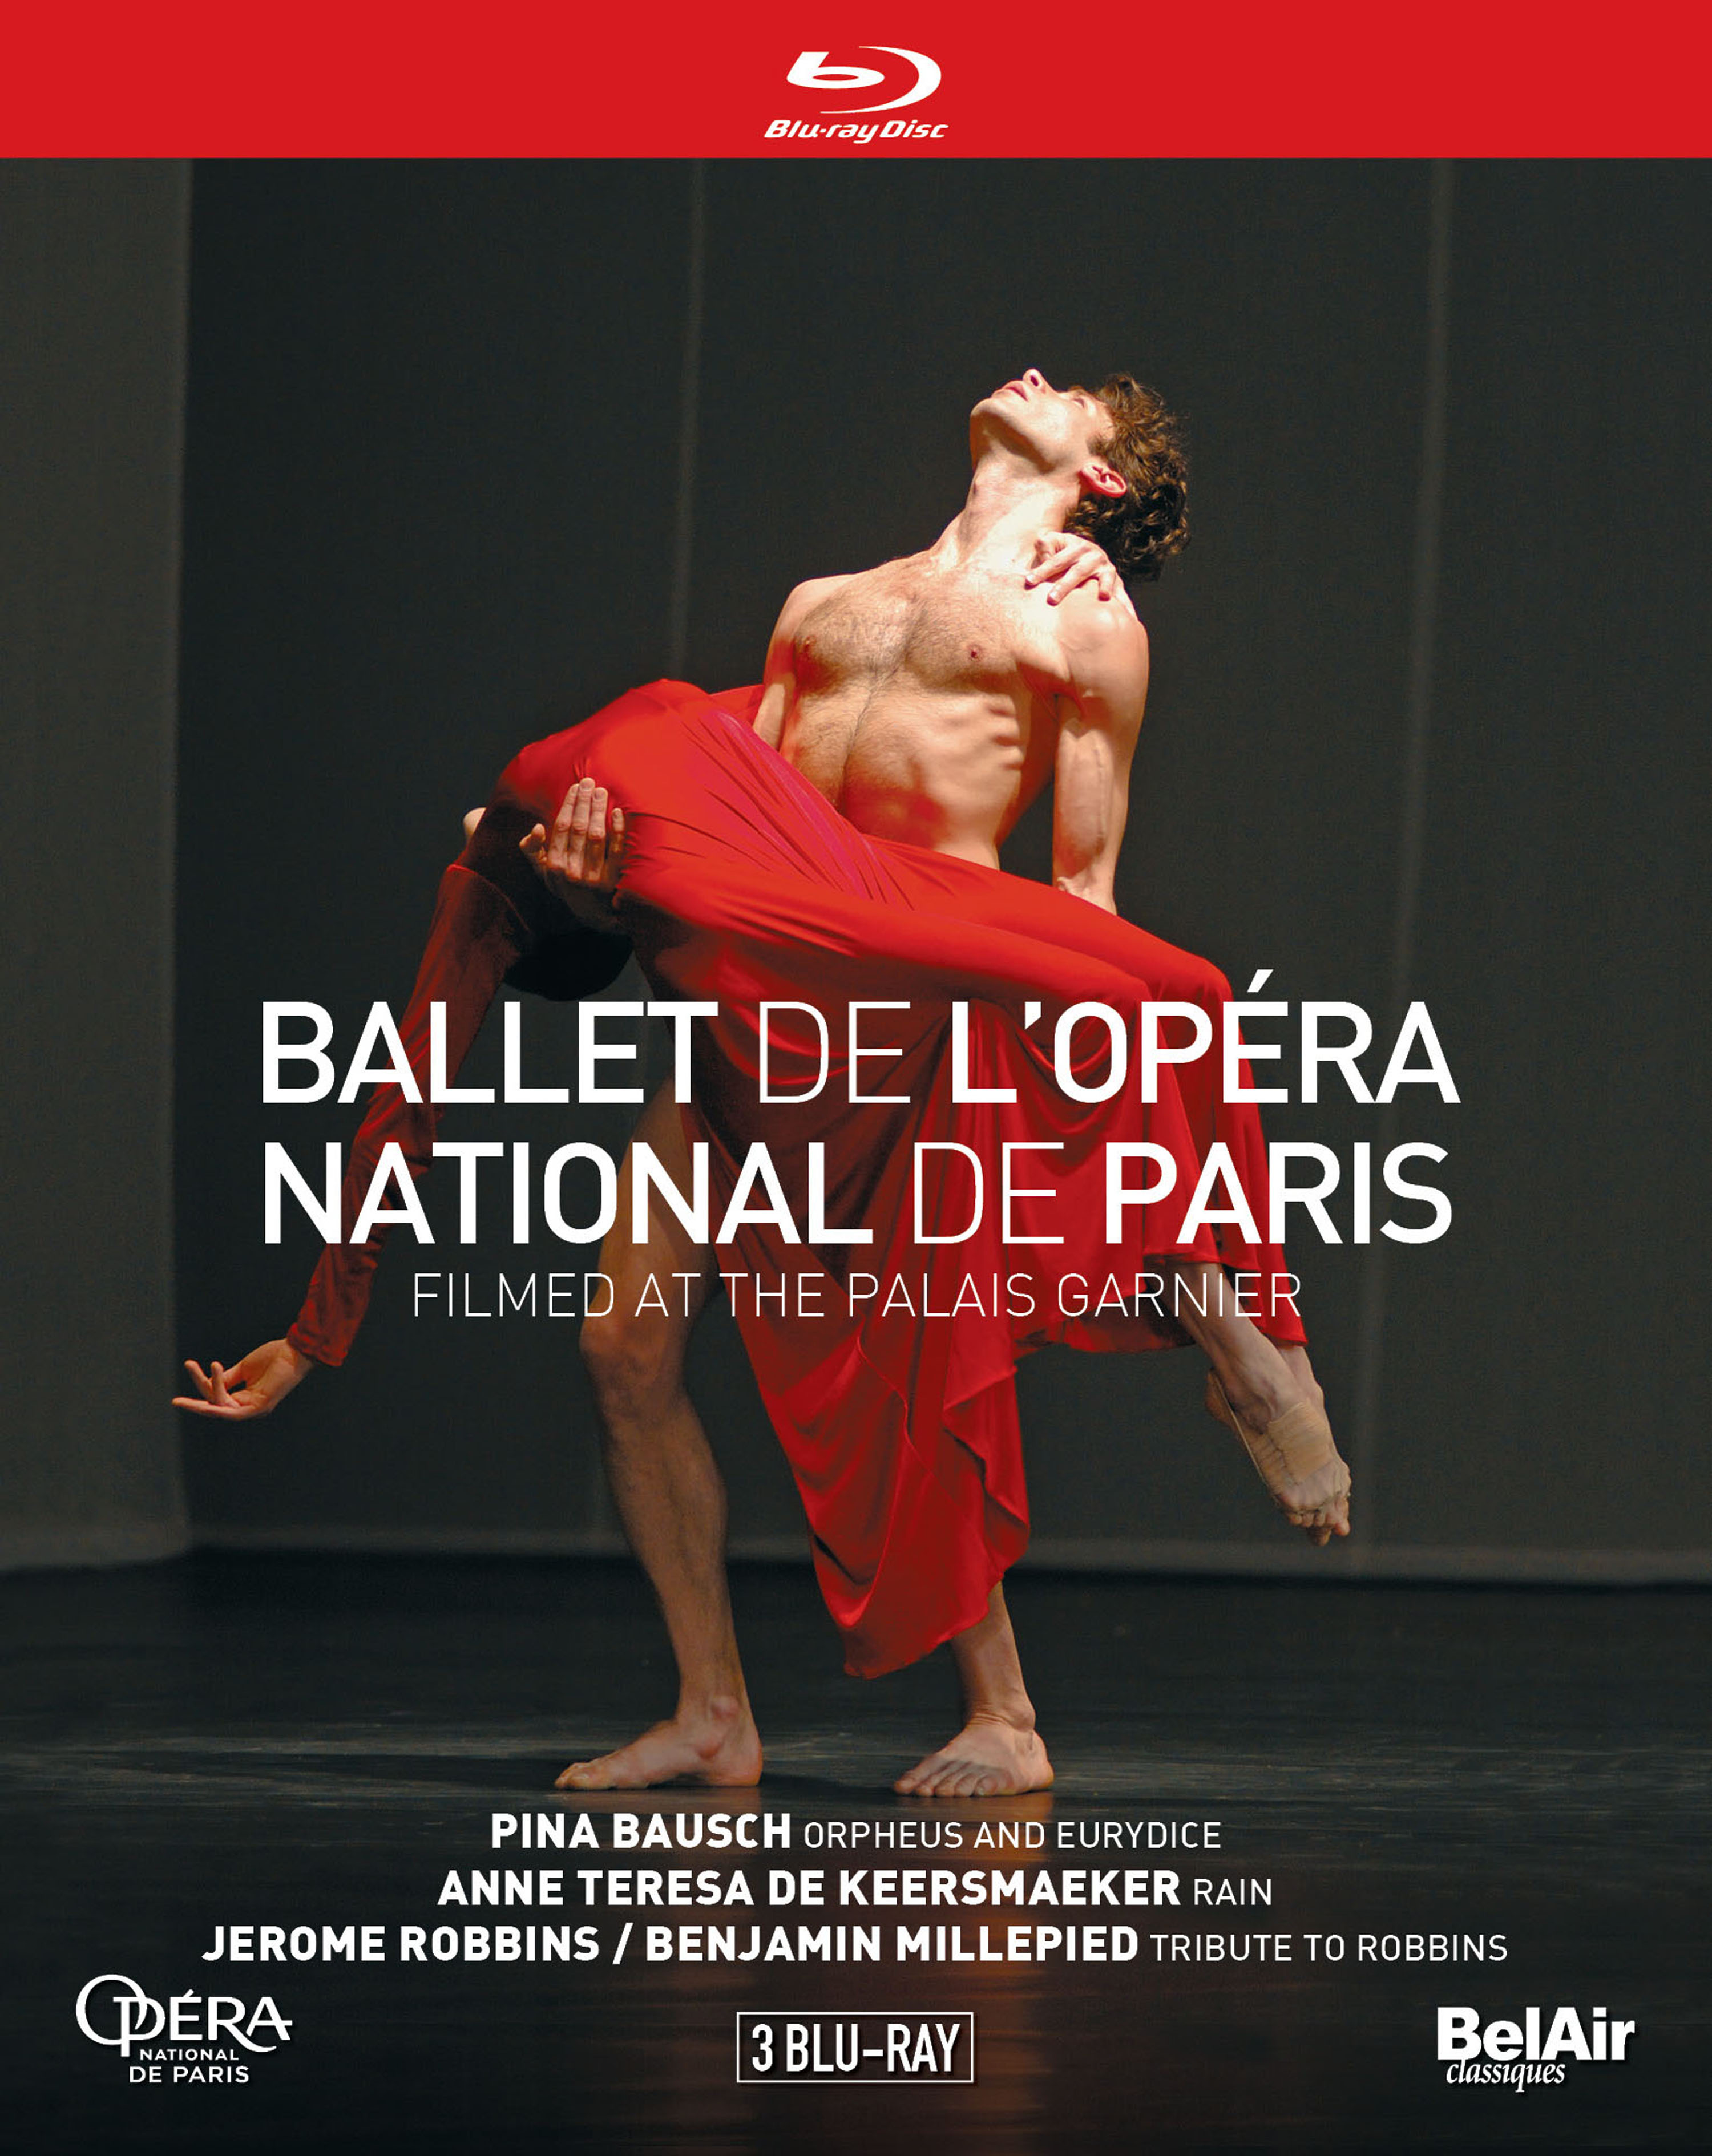 Ballet de l'Opera National de Paris -Orpheus & Eurydice, "Tribute to Jerome Robbins", Rain